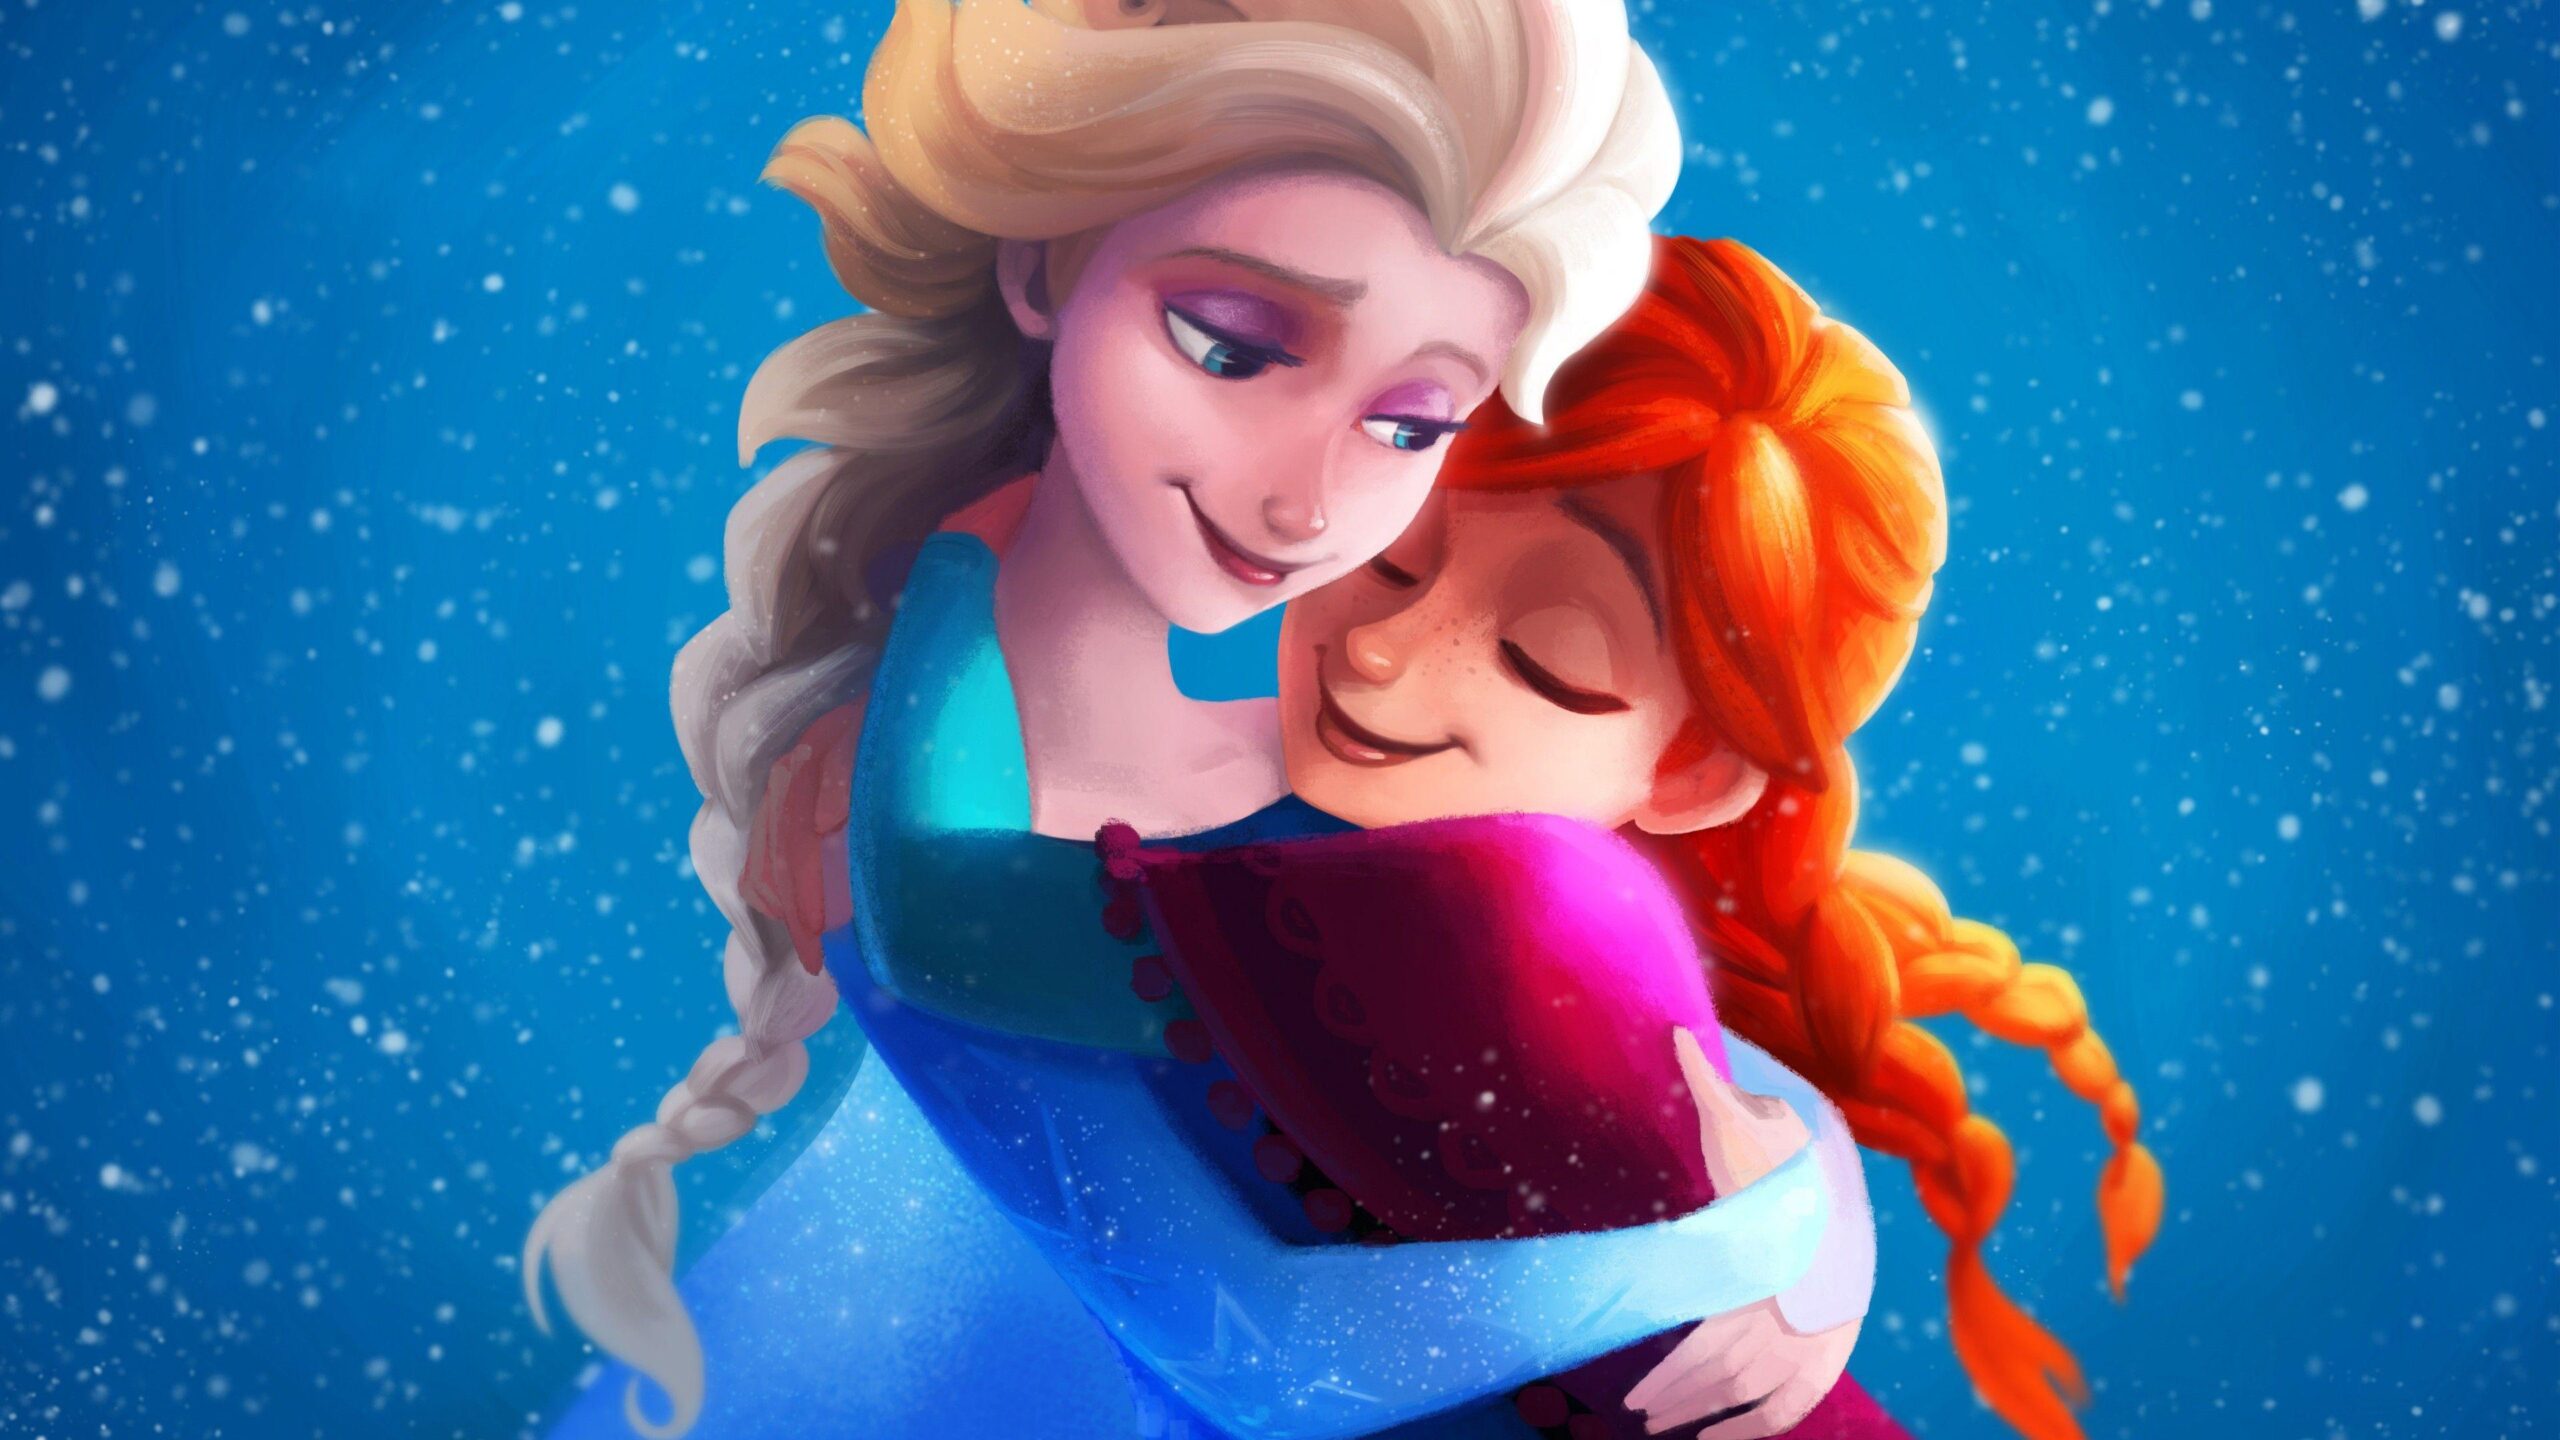 Frozen Wallpaper 4k Download, Frozen, Cartoons